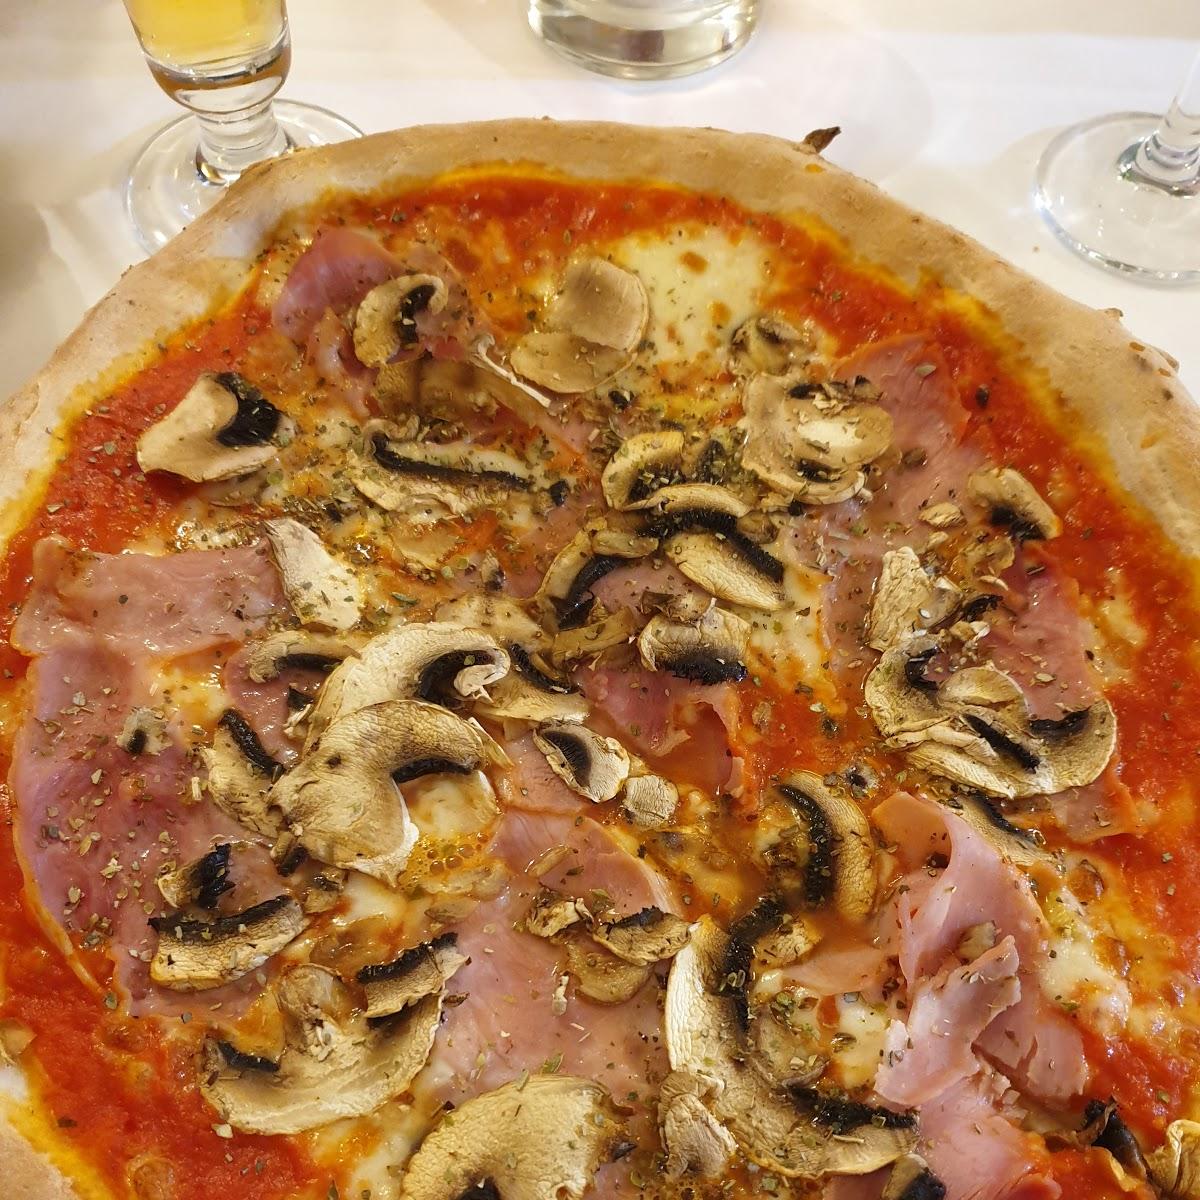 Restaurant "Pizzaservice Italia" in Gemmrigheim